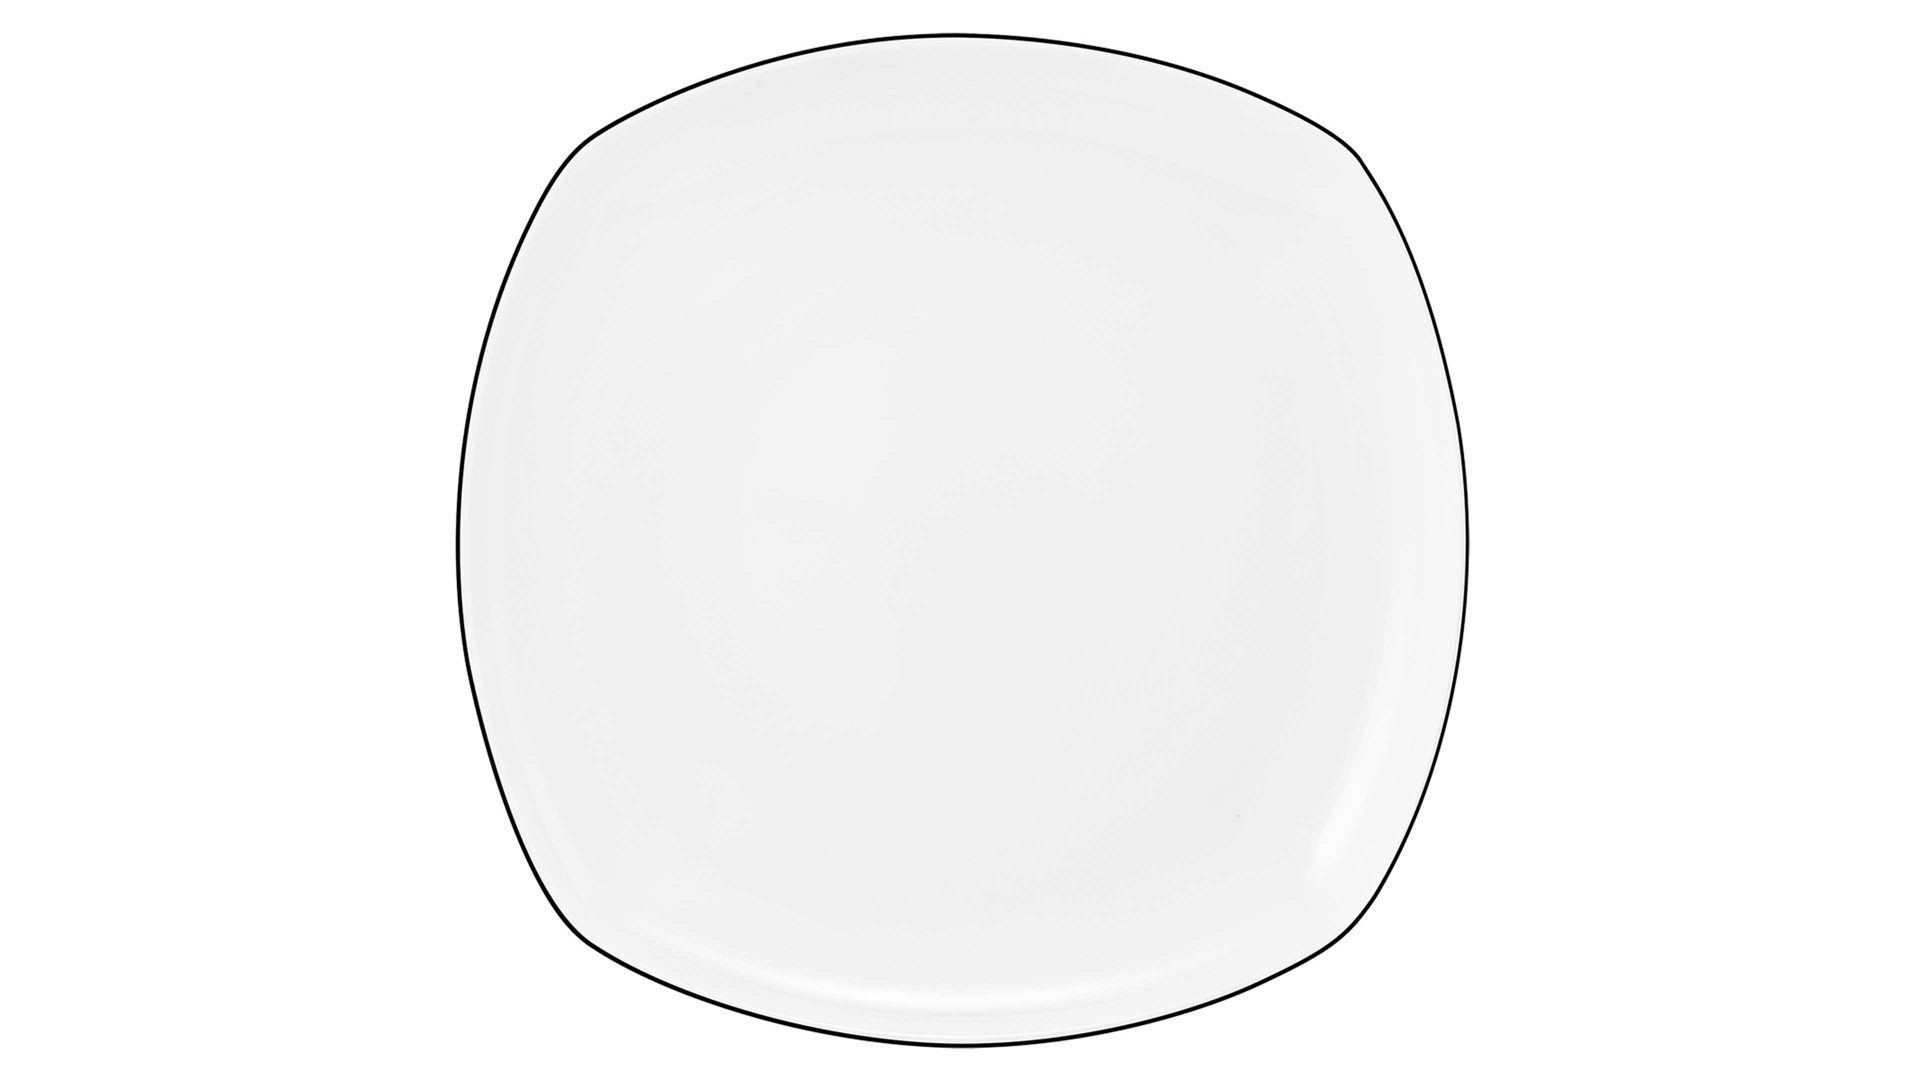 Essteller Seltmann aus Porzellan in Weiß Seltmann Lido – Speiseteller weißes Porzellan – eckig, ca. 26 x 26 cm